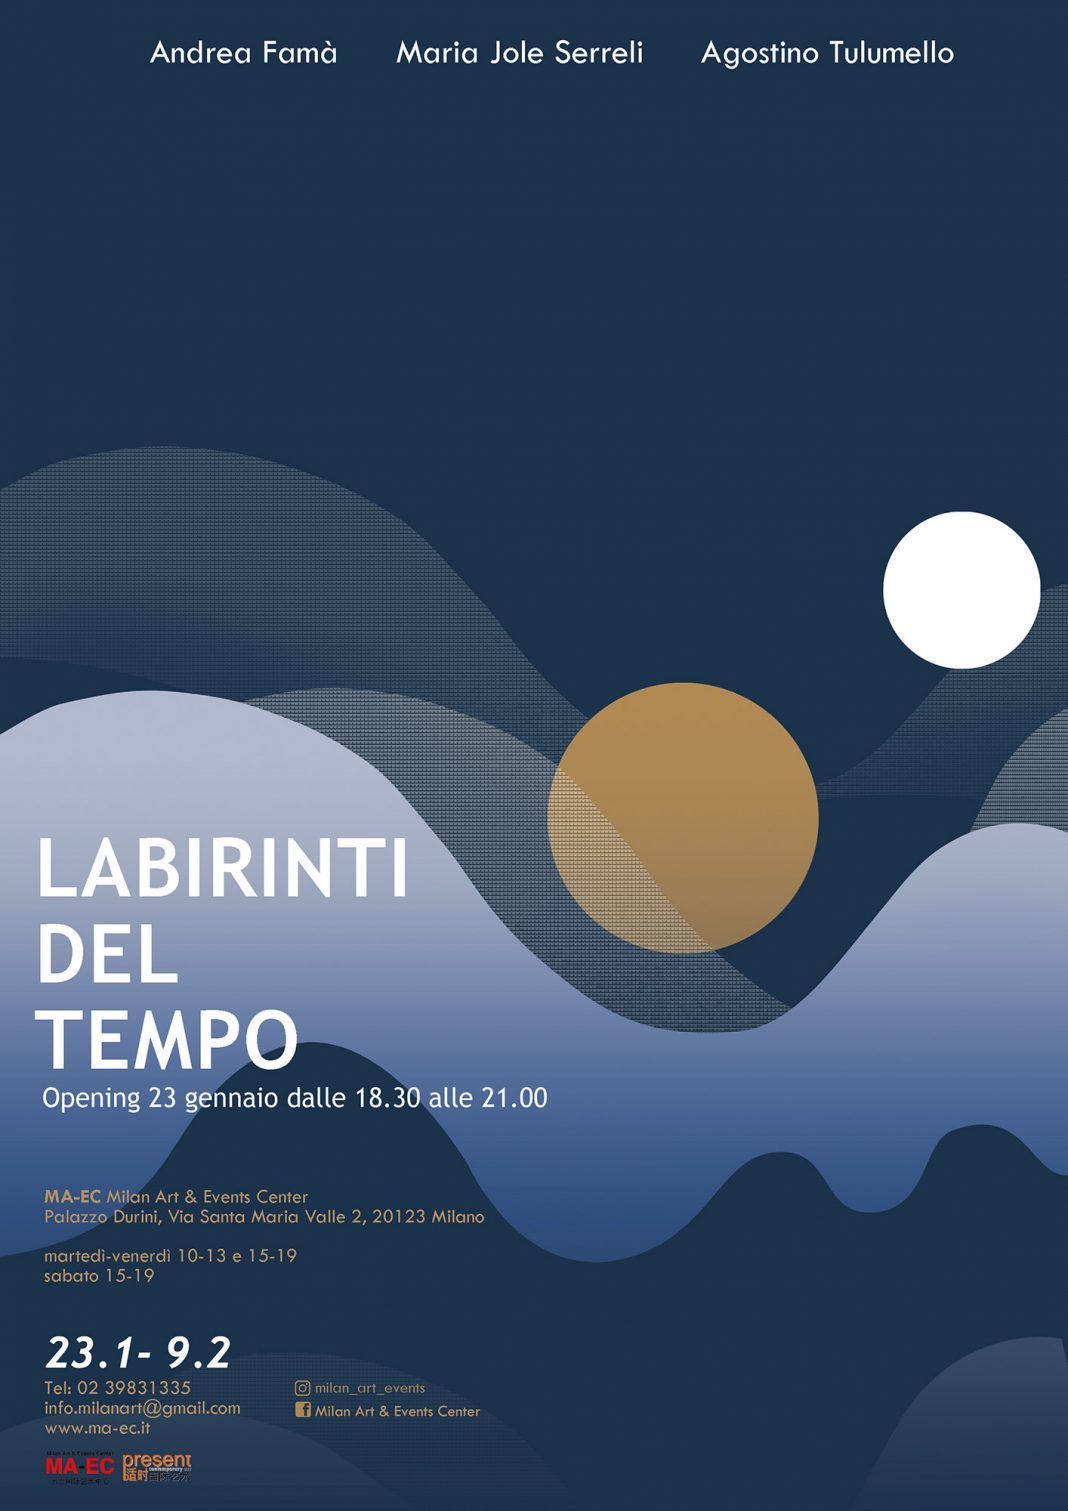 Labirinti del Tempohttps://www.exibart.com/repository/media/eventi/2019/01/labirinti-del-tempo-1068x1511.jpg